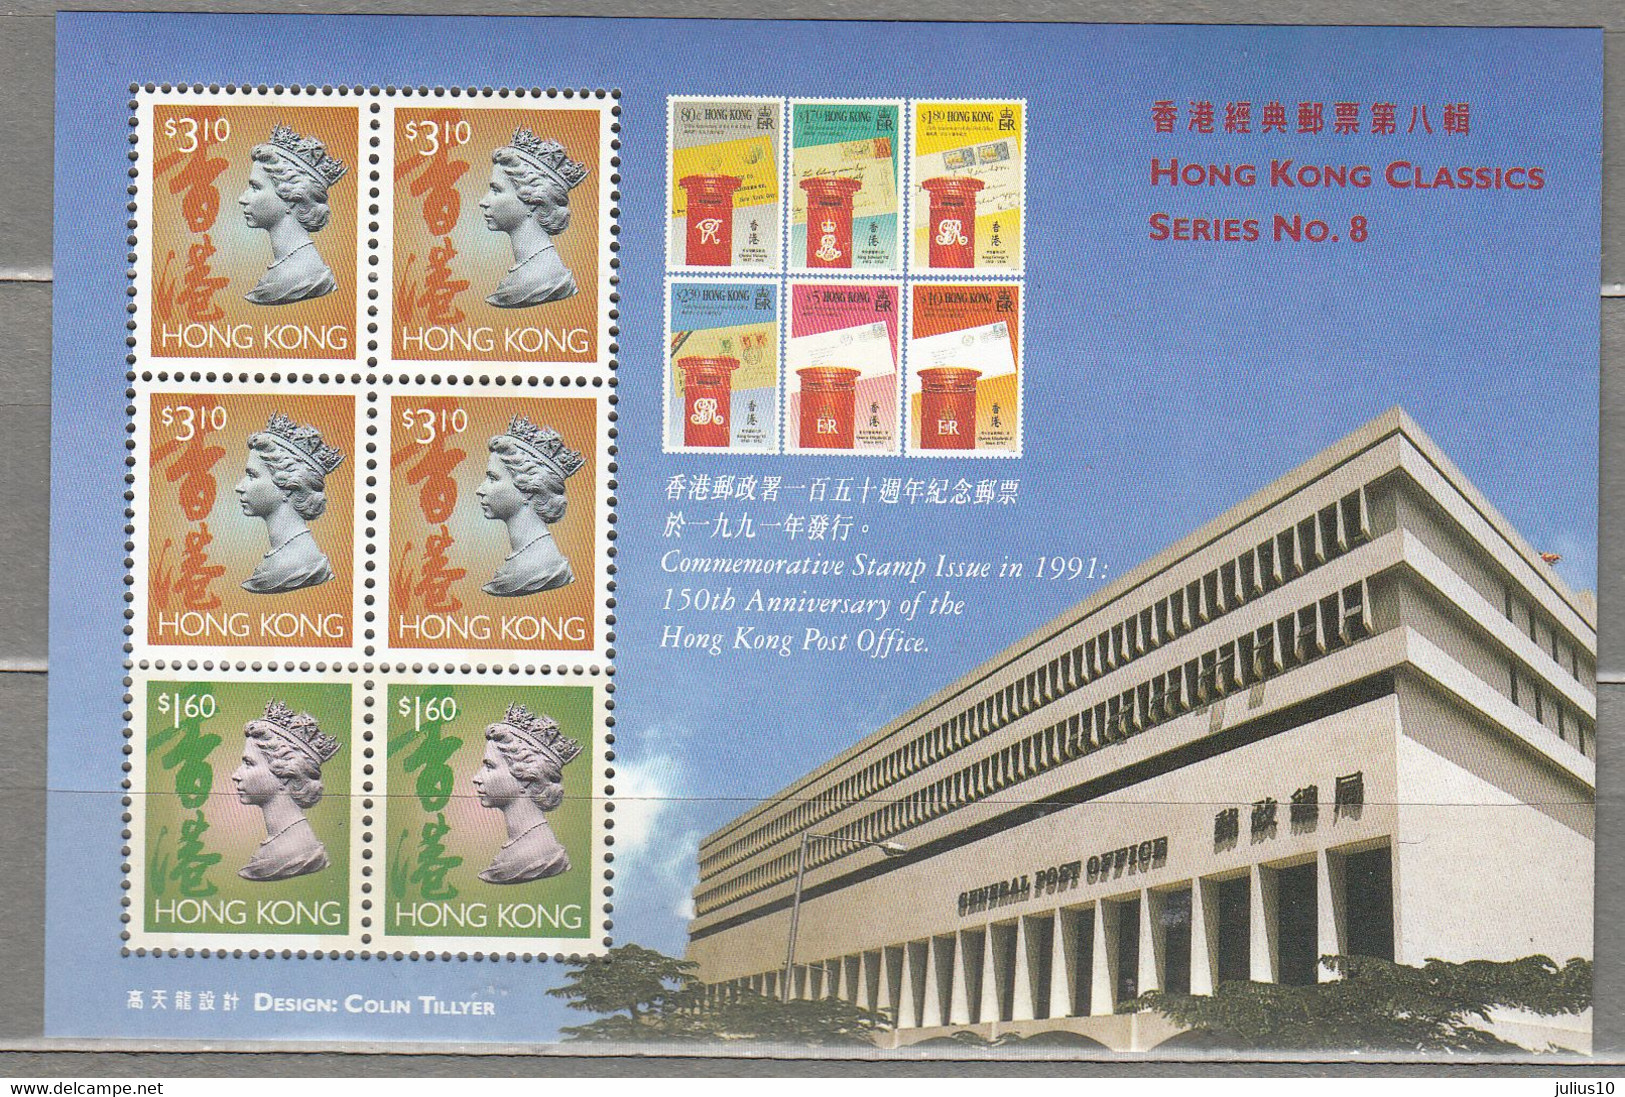 HONG KONG 1997 Post Office Block Series No8 MNH (**) #21518 - Blocks & Sheetlets